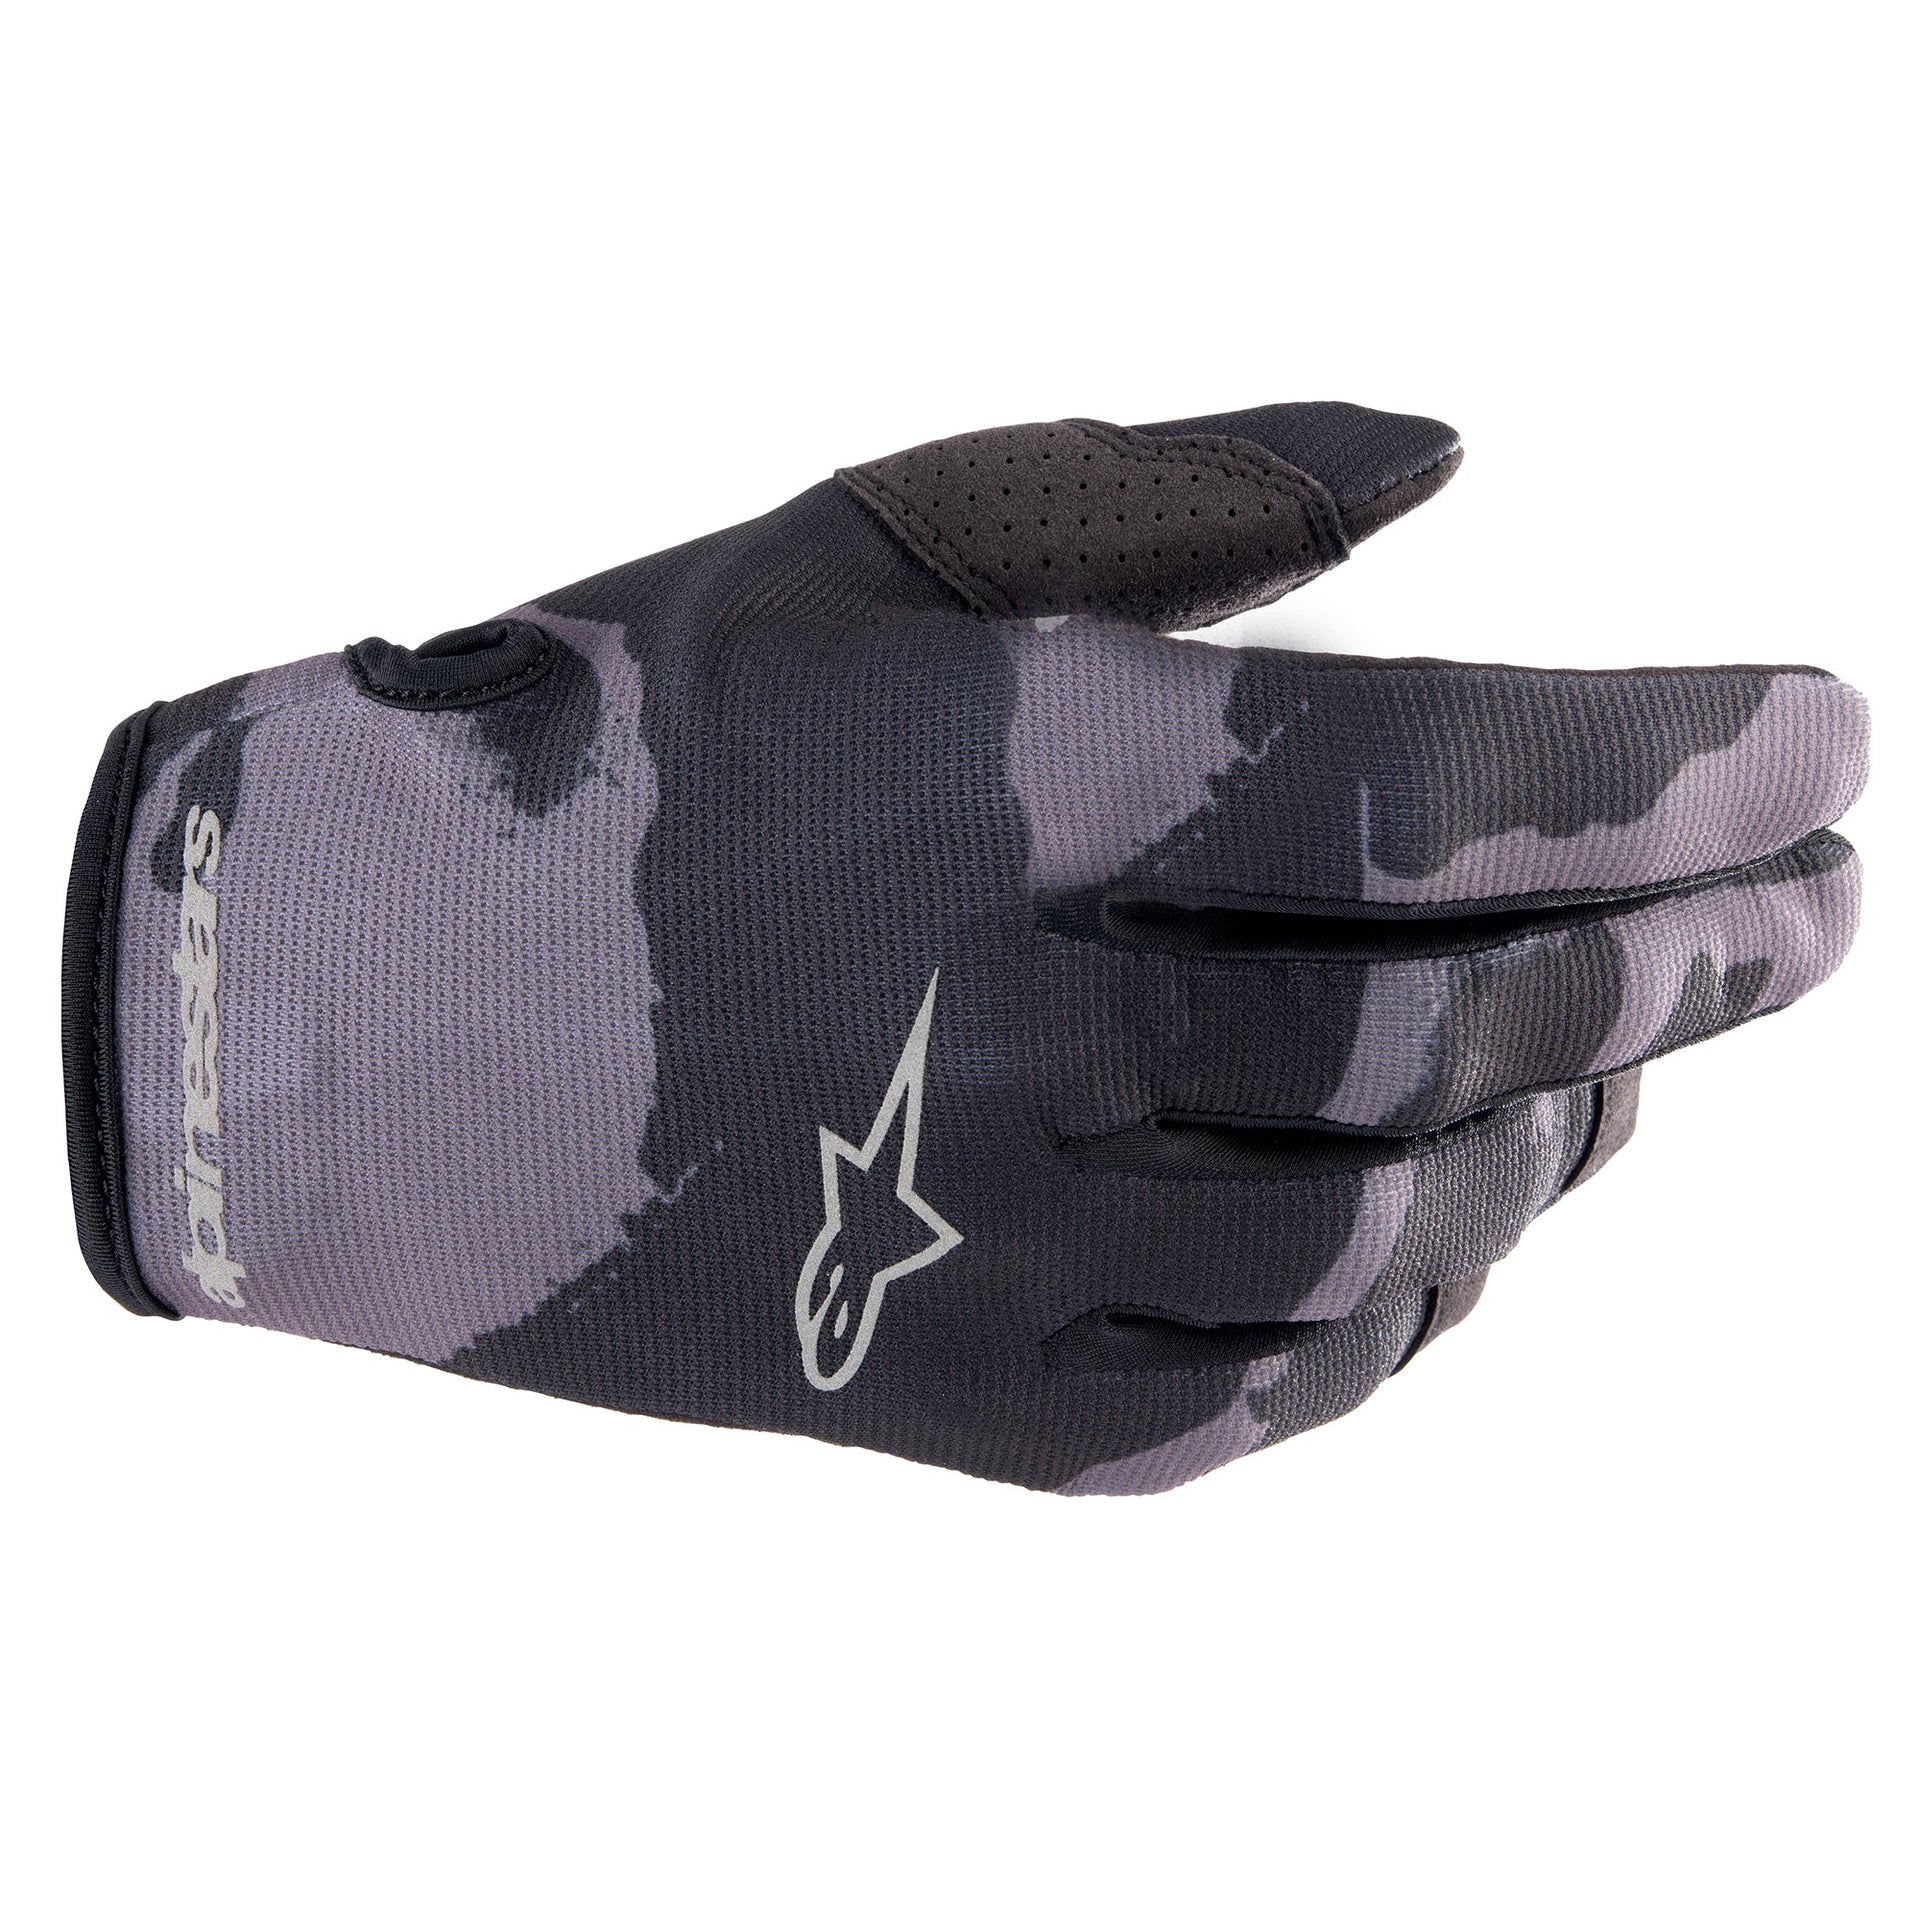 Alpinestars - Radar Gloves (Youth)